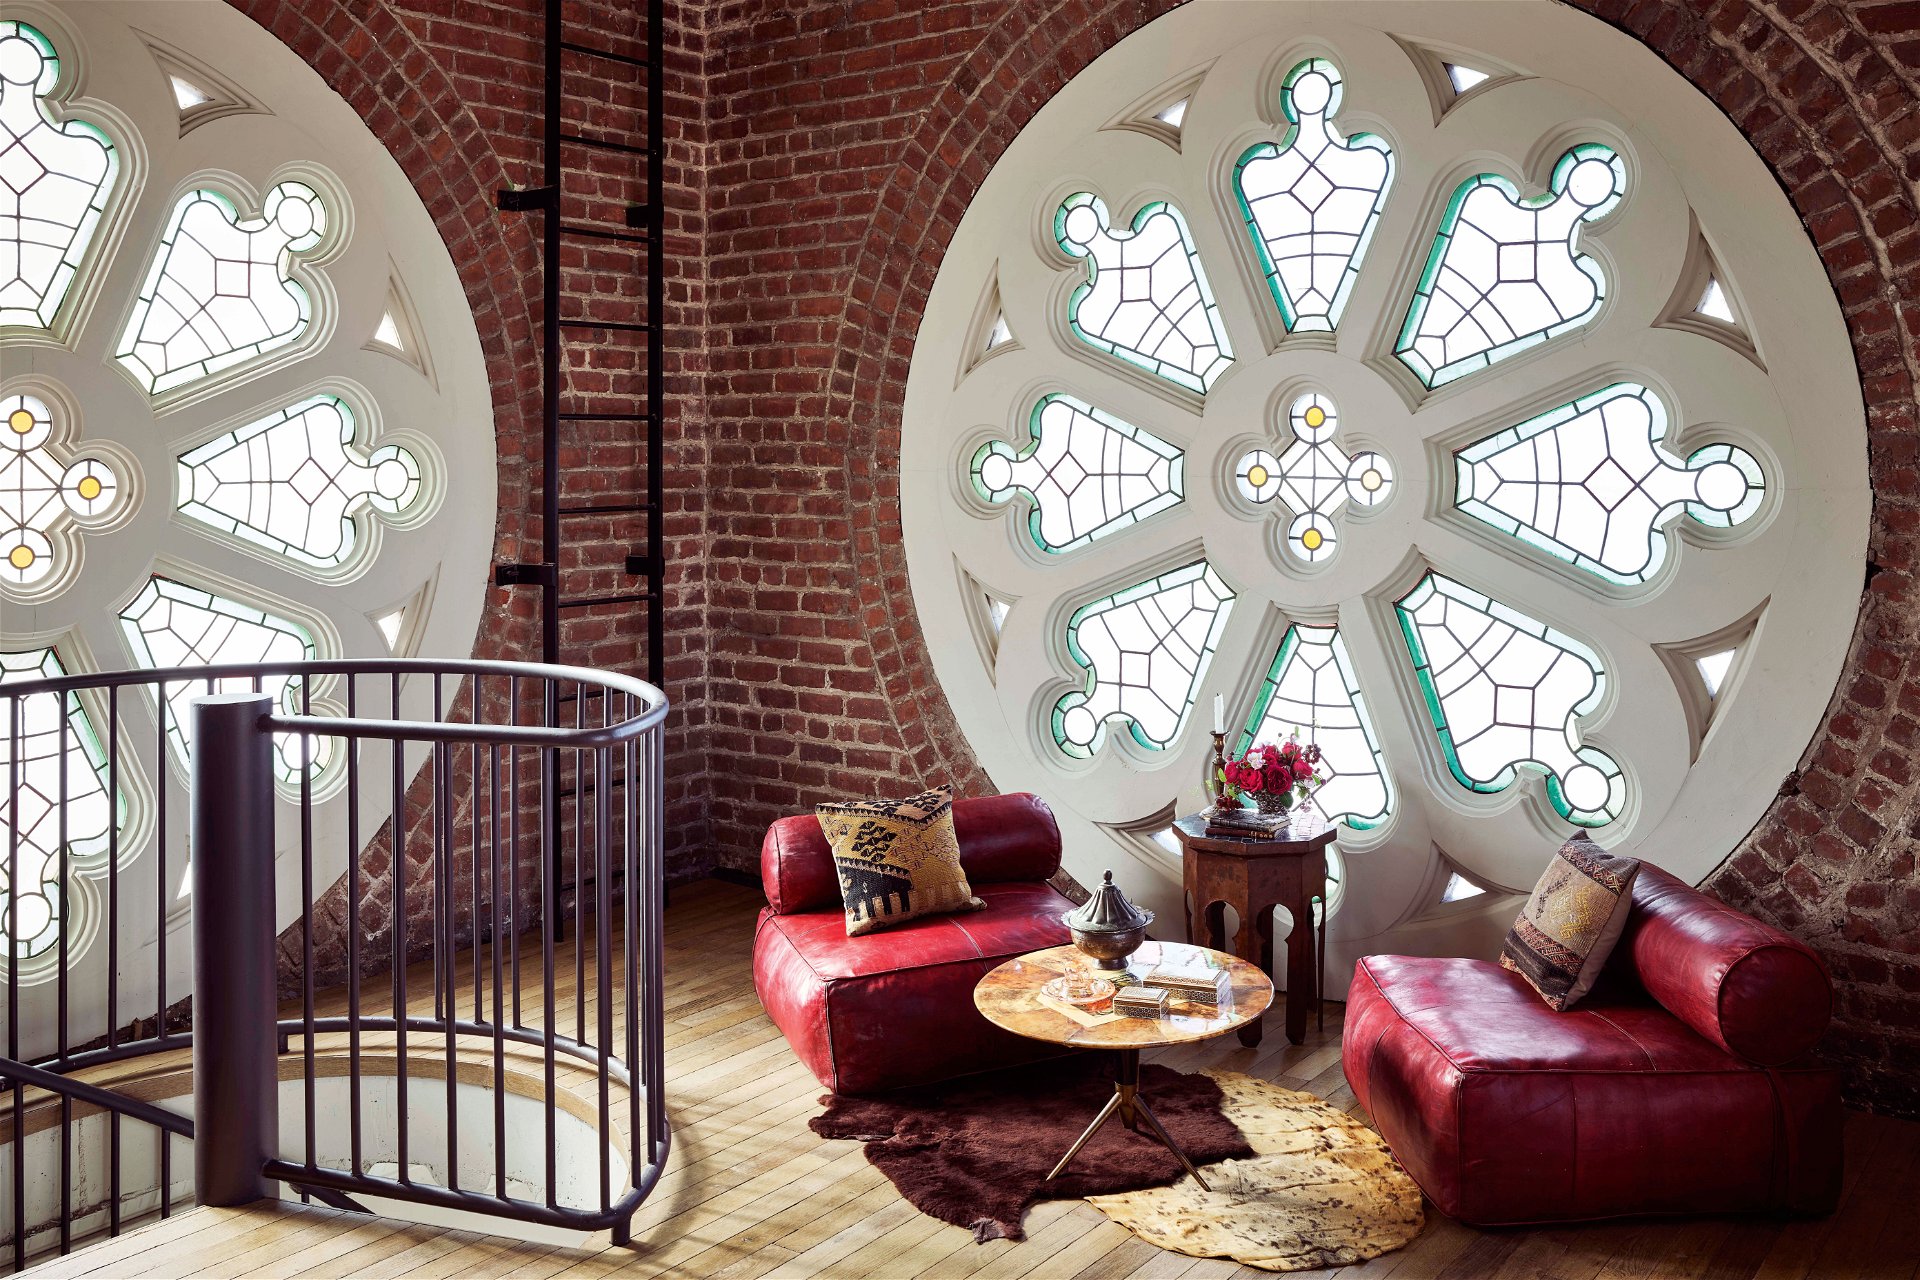 Tête-à-tête: Für diskrete Gespräche bietet der Club ein ästhetisches Ambiente, zum Beispiel hier im Glockenturm mit wunderschönem Rosettenfenster.